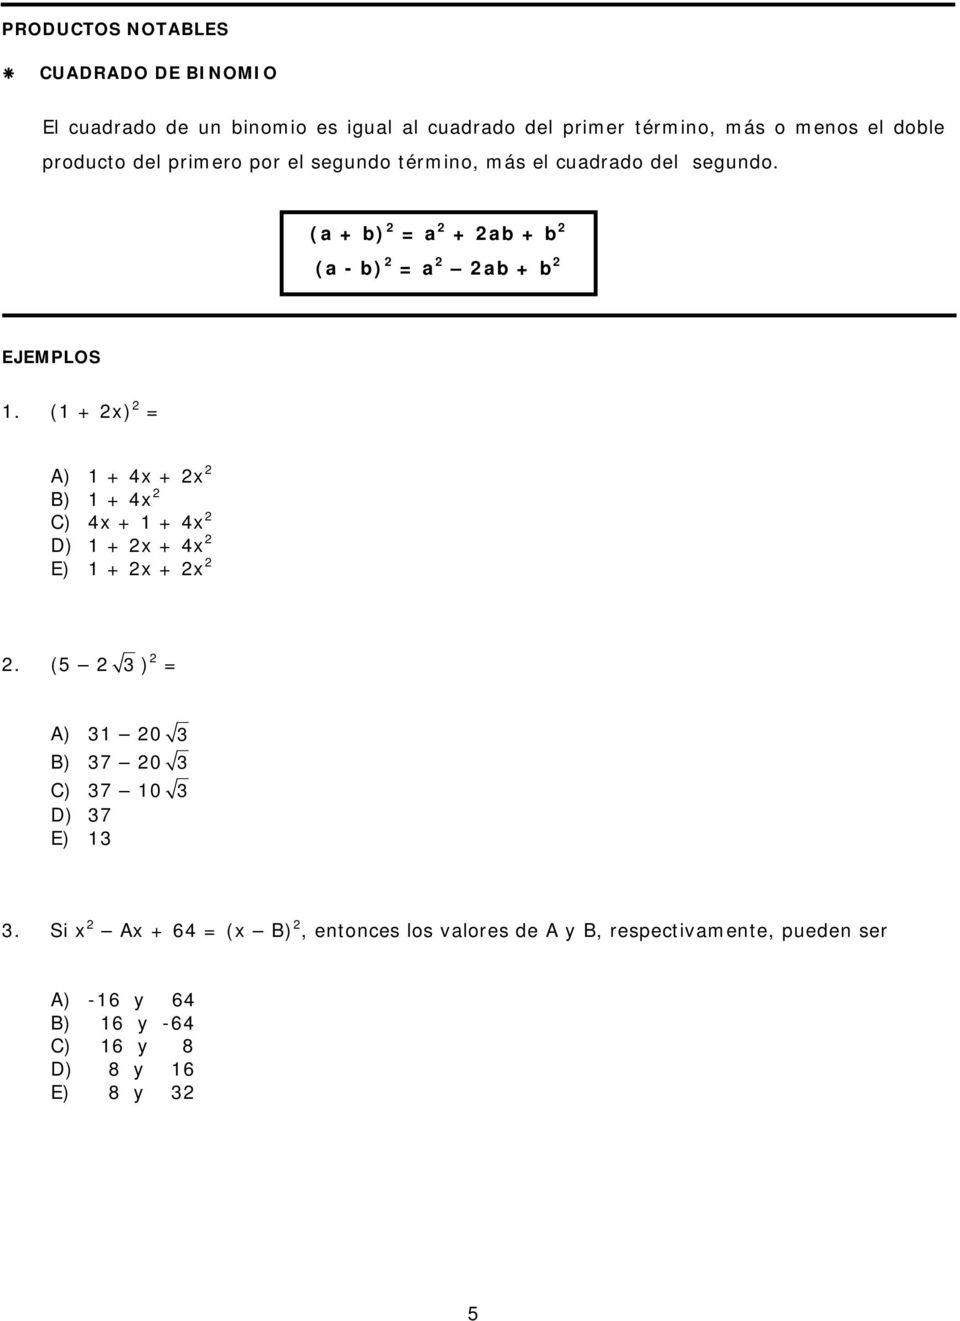 (a + b) a + ab + b (a - b) a ab + b EJEMPLOS. ( + ) + 4 + + 4 4 + + 4 + + 4 E) + +. (5 ) 0 7 0 7 0 7 E).